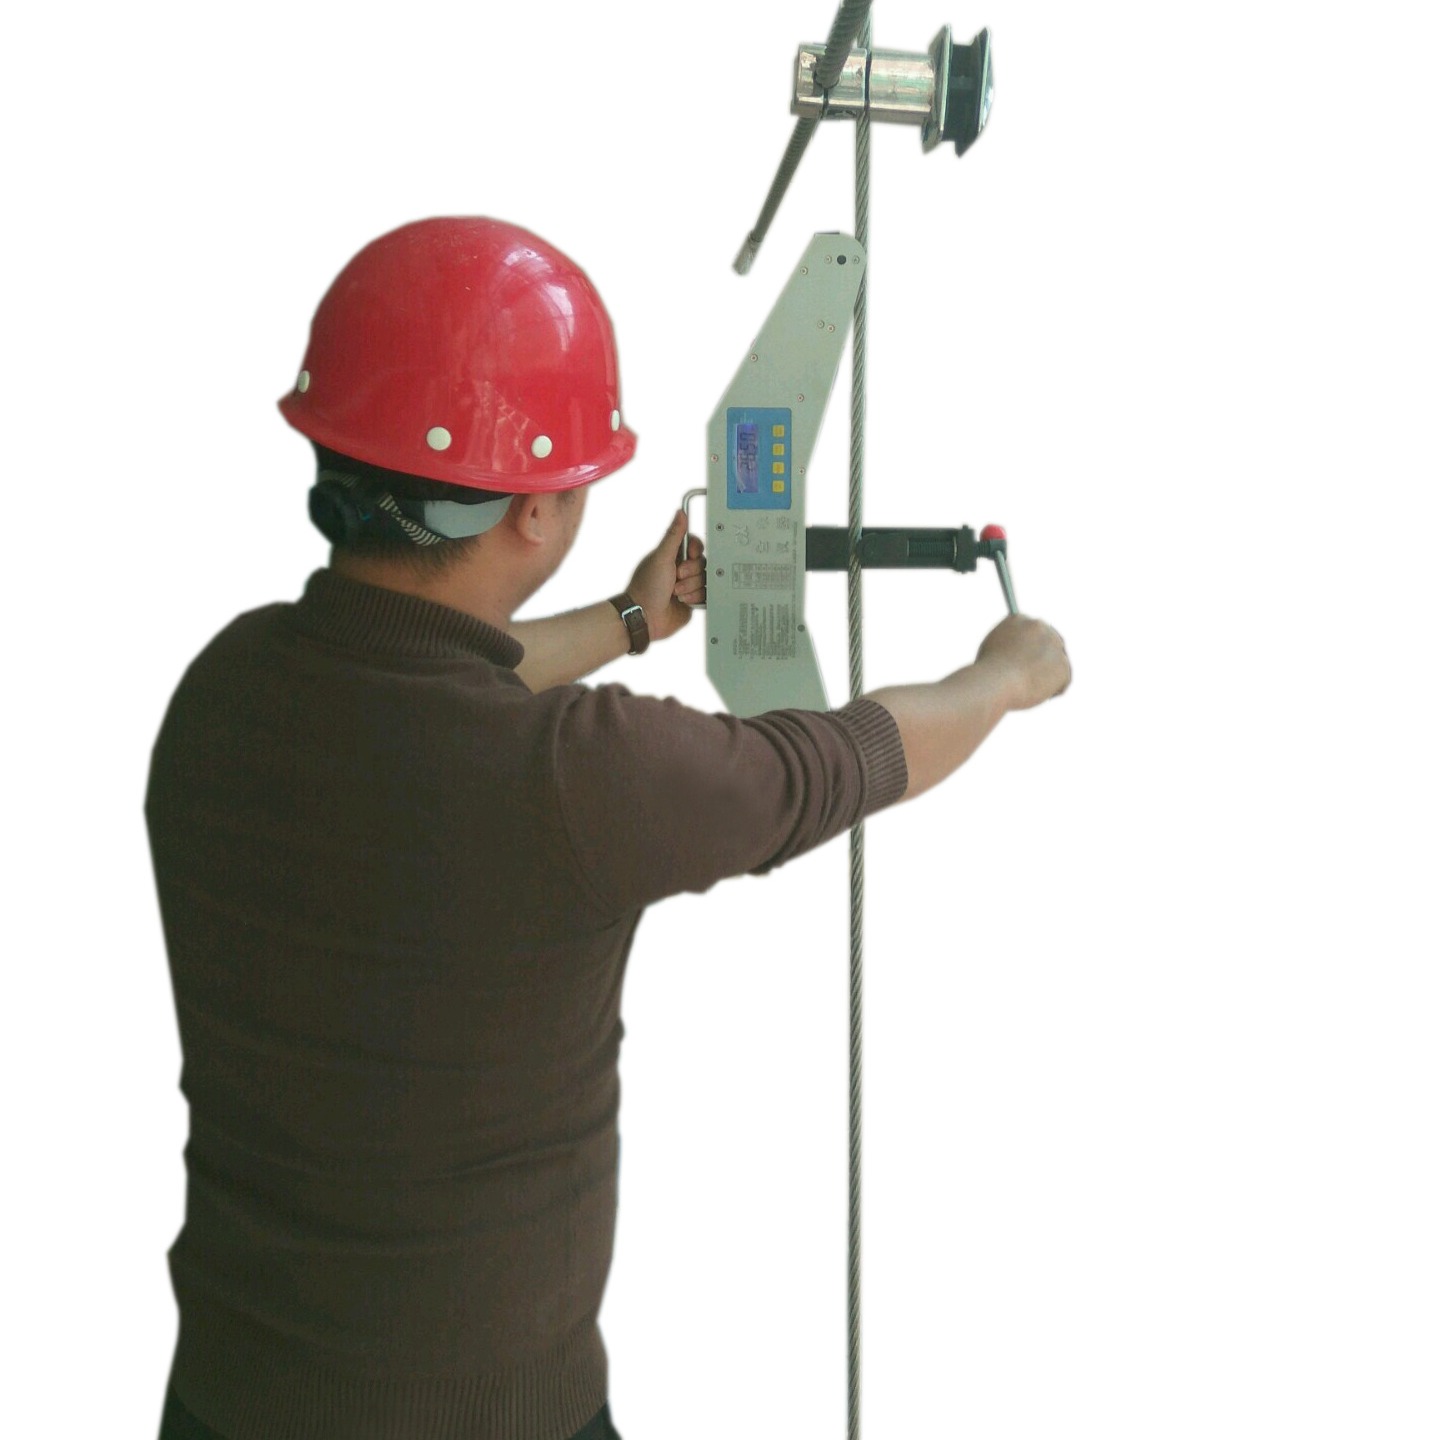 金象牌张力测量仪-线索在线张力测试仪金象源 SL-30T数显式工作测力仪 钢绞线张力检测装置